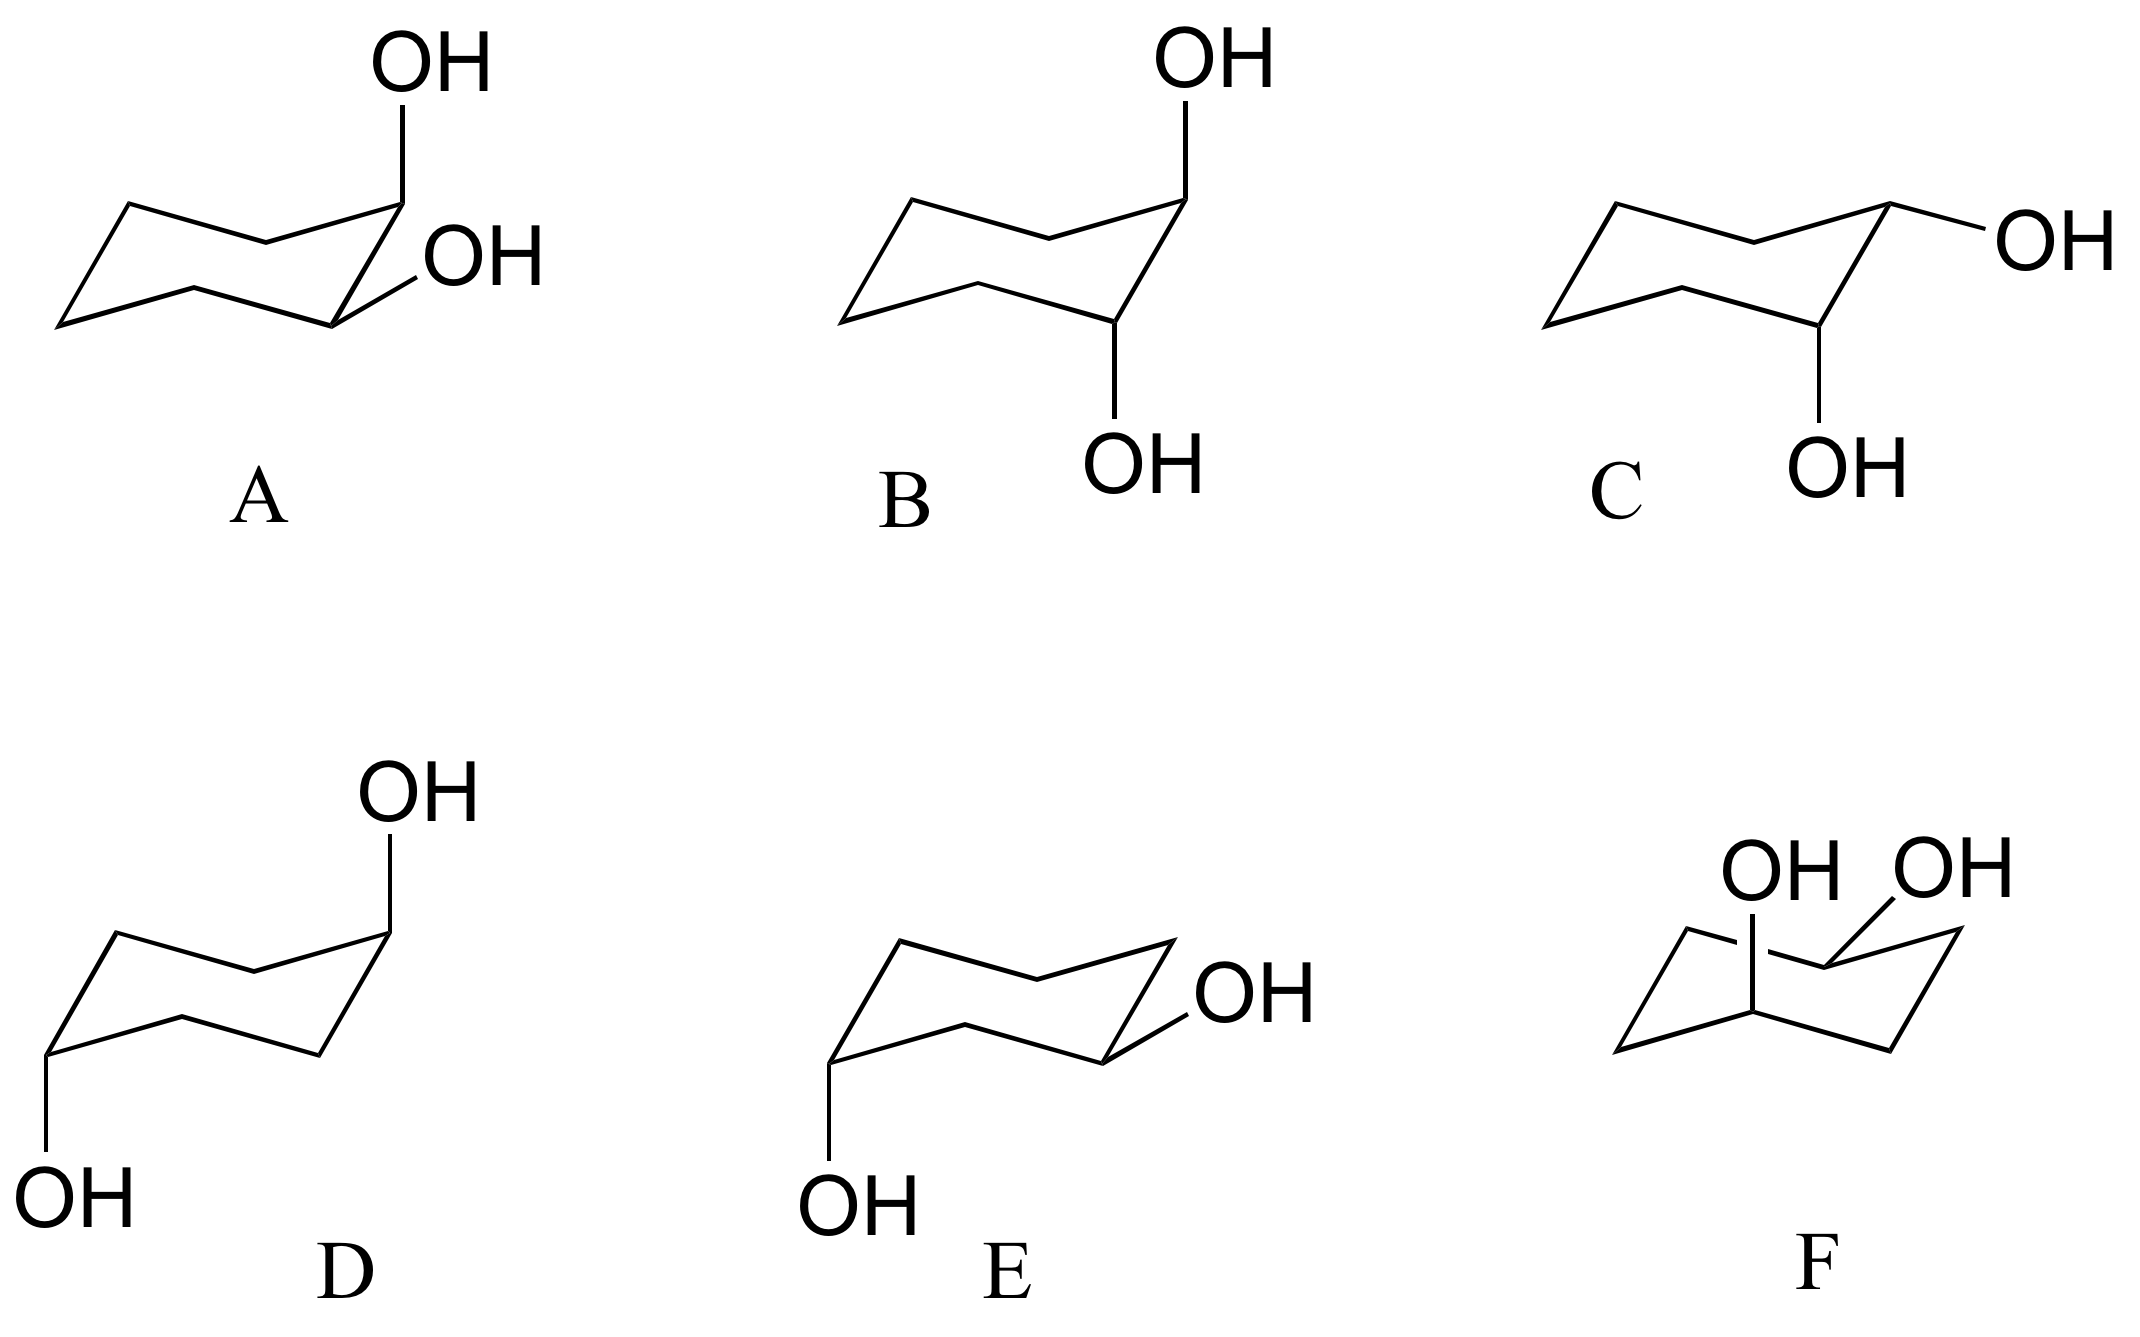 Seis conformaciones de silla con dos grupos hidroxilo etiquetados de A a F.